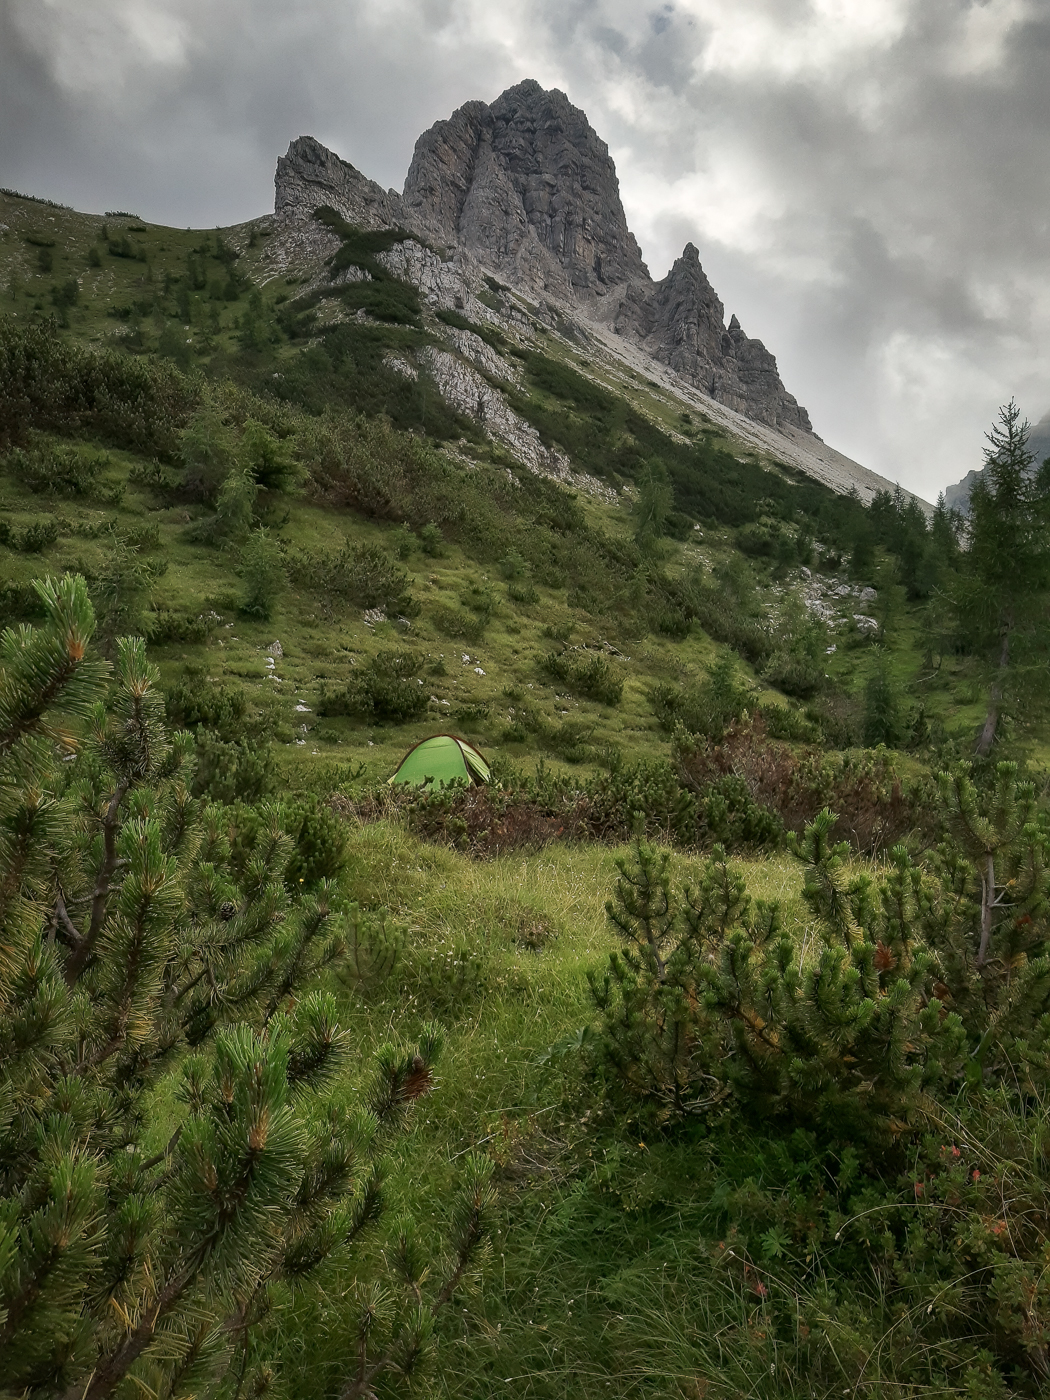 Letto di pini mughi nel Parco Naturale Dolomiti Friulane, Italia.